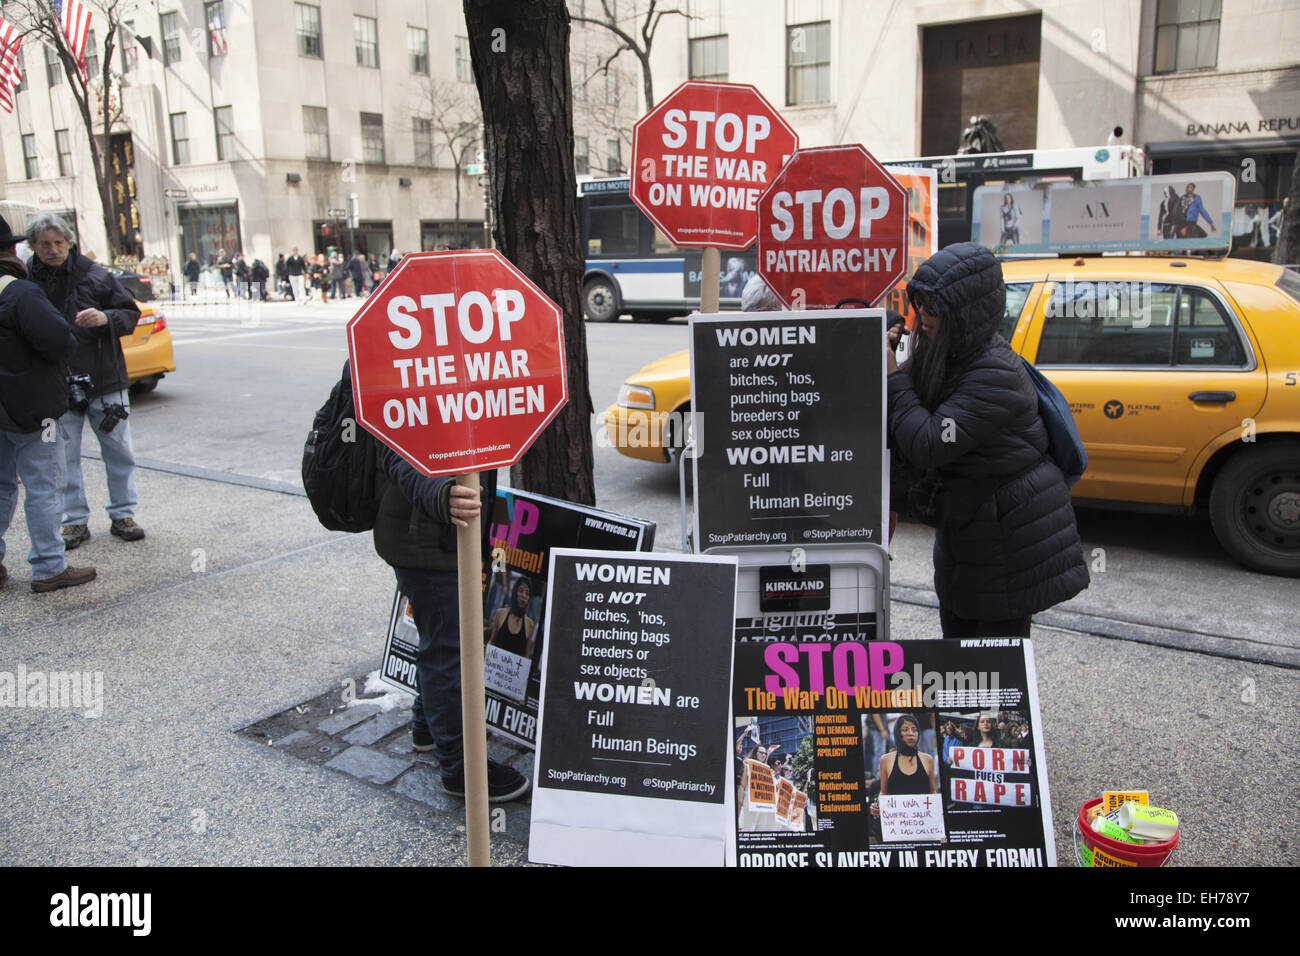 Nueva York, Estados Unidos. 8 de marzo de 2015. Mujeres y hombres marcharon a través de midtown Manhattan con variados mensajes con un tema unificador; que los derechos de la mujer, la igualdad de los Derechos Humanos. Crédito: David Grossman/Alamy Live News Foto de stock